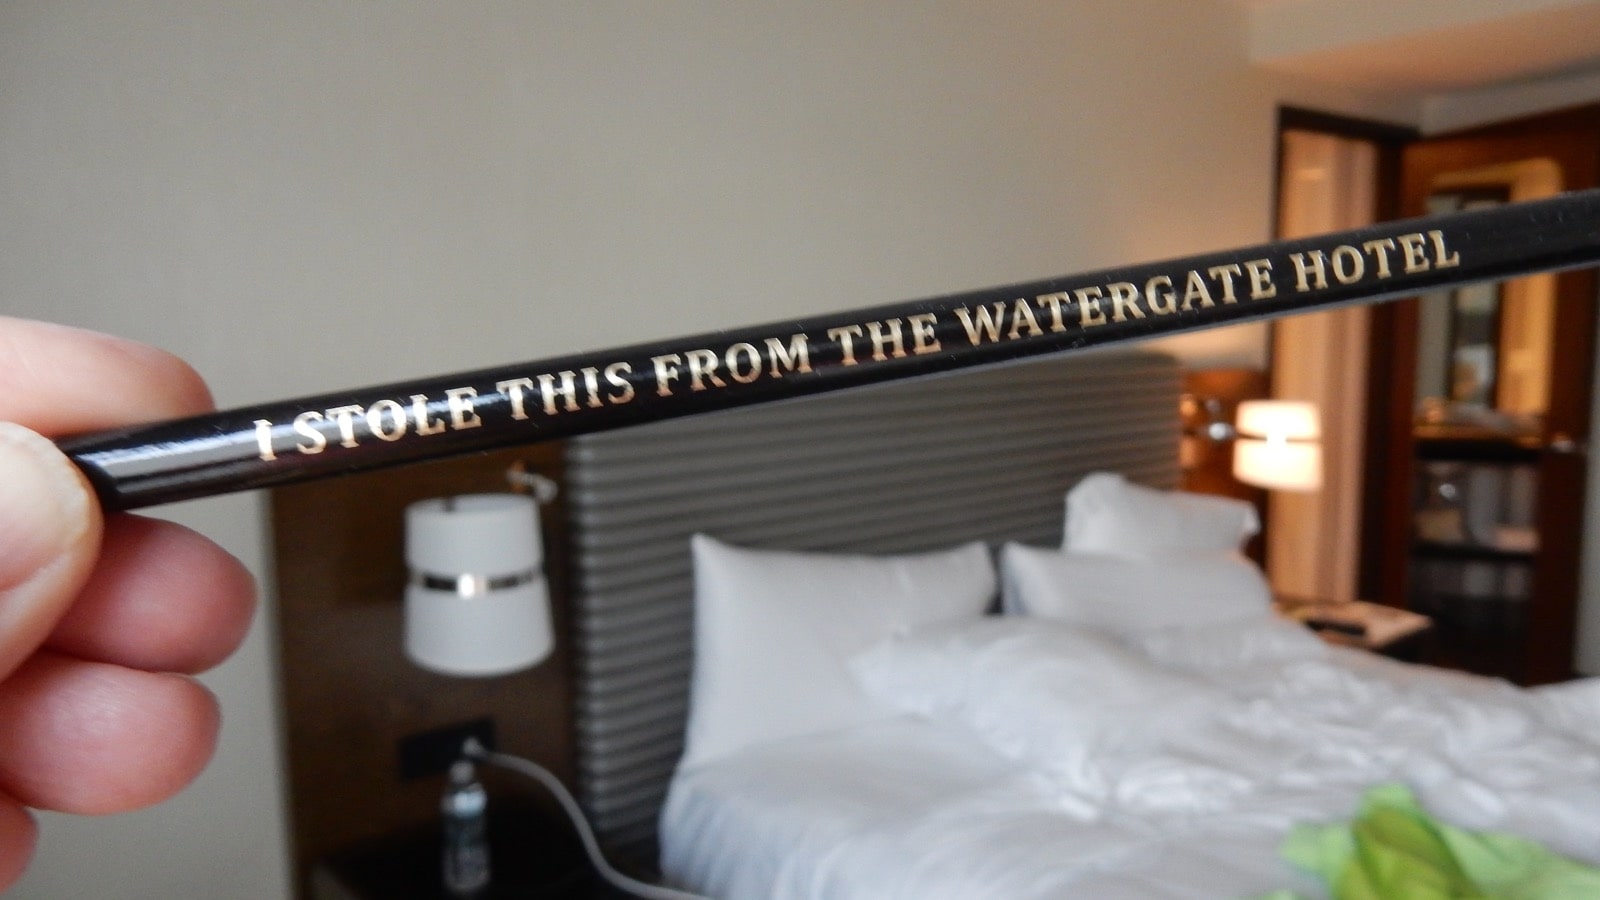 Watergate Hotel pencil